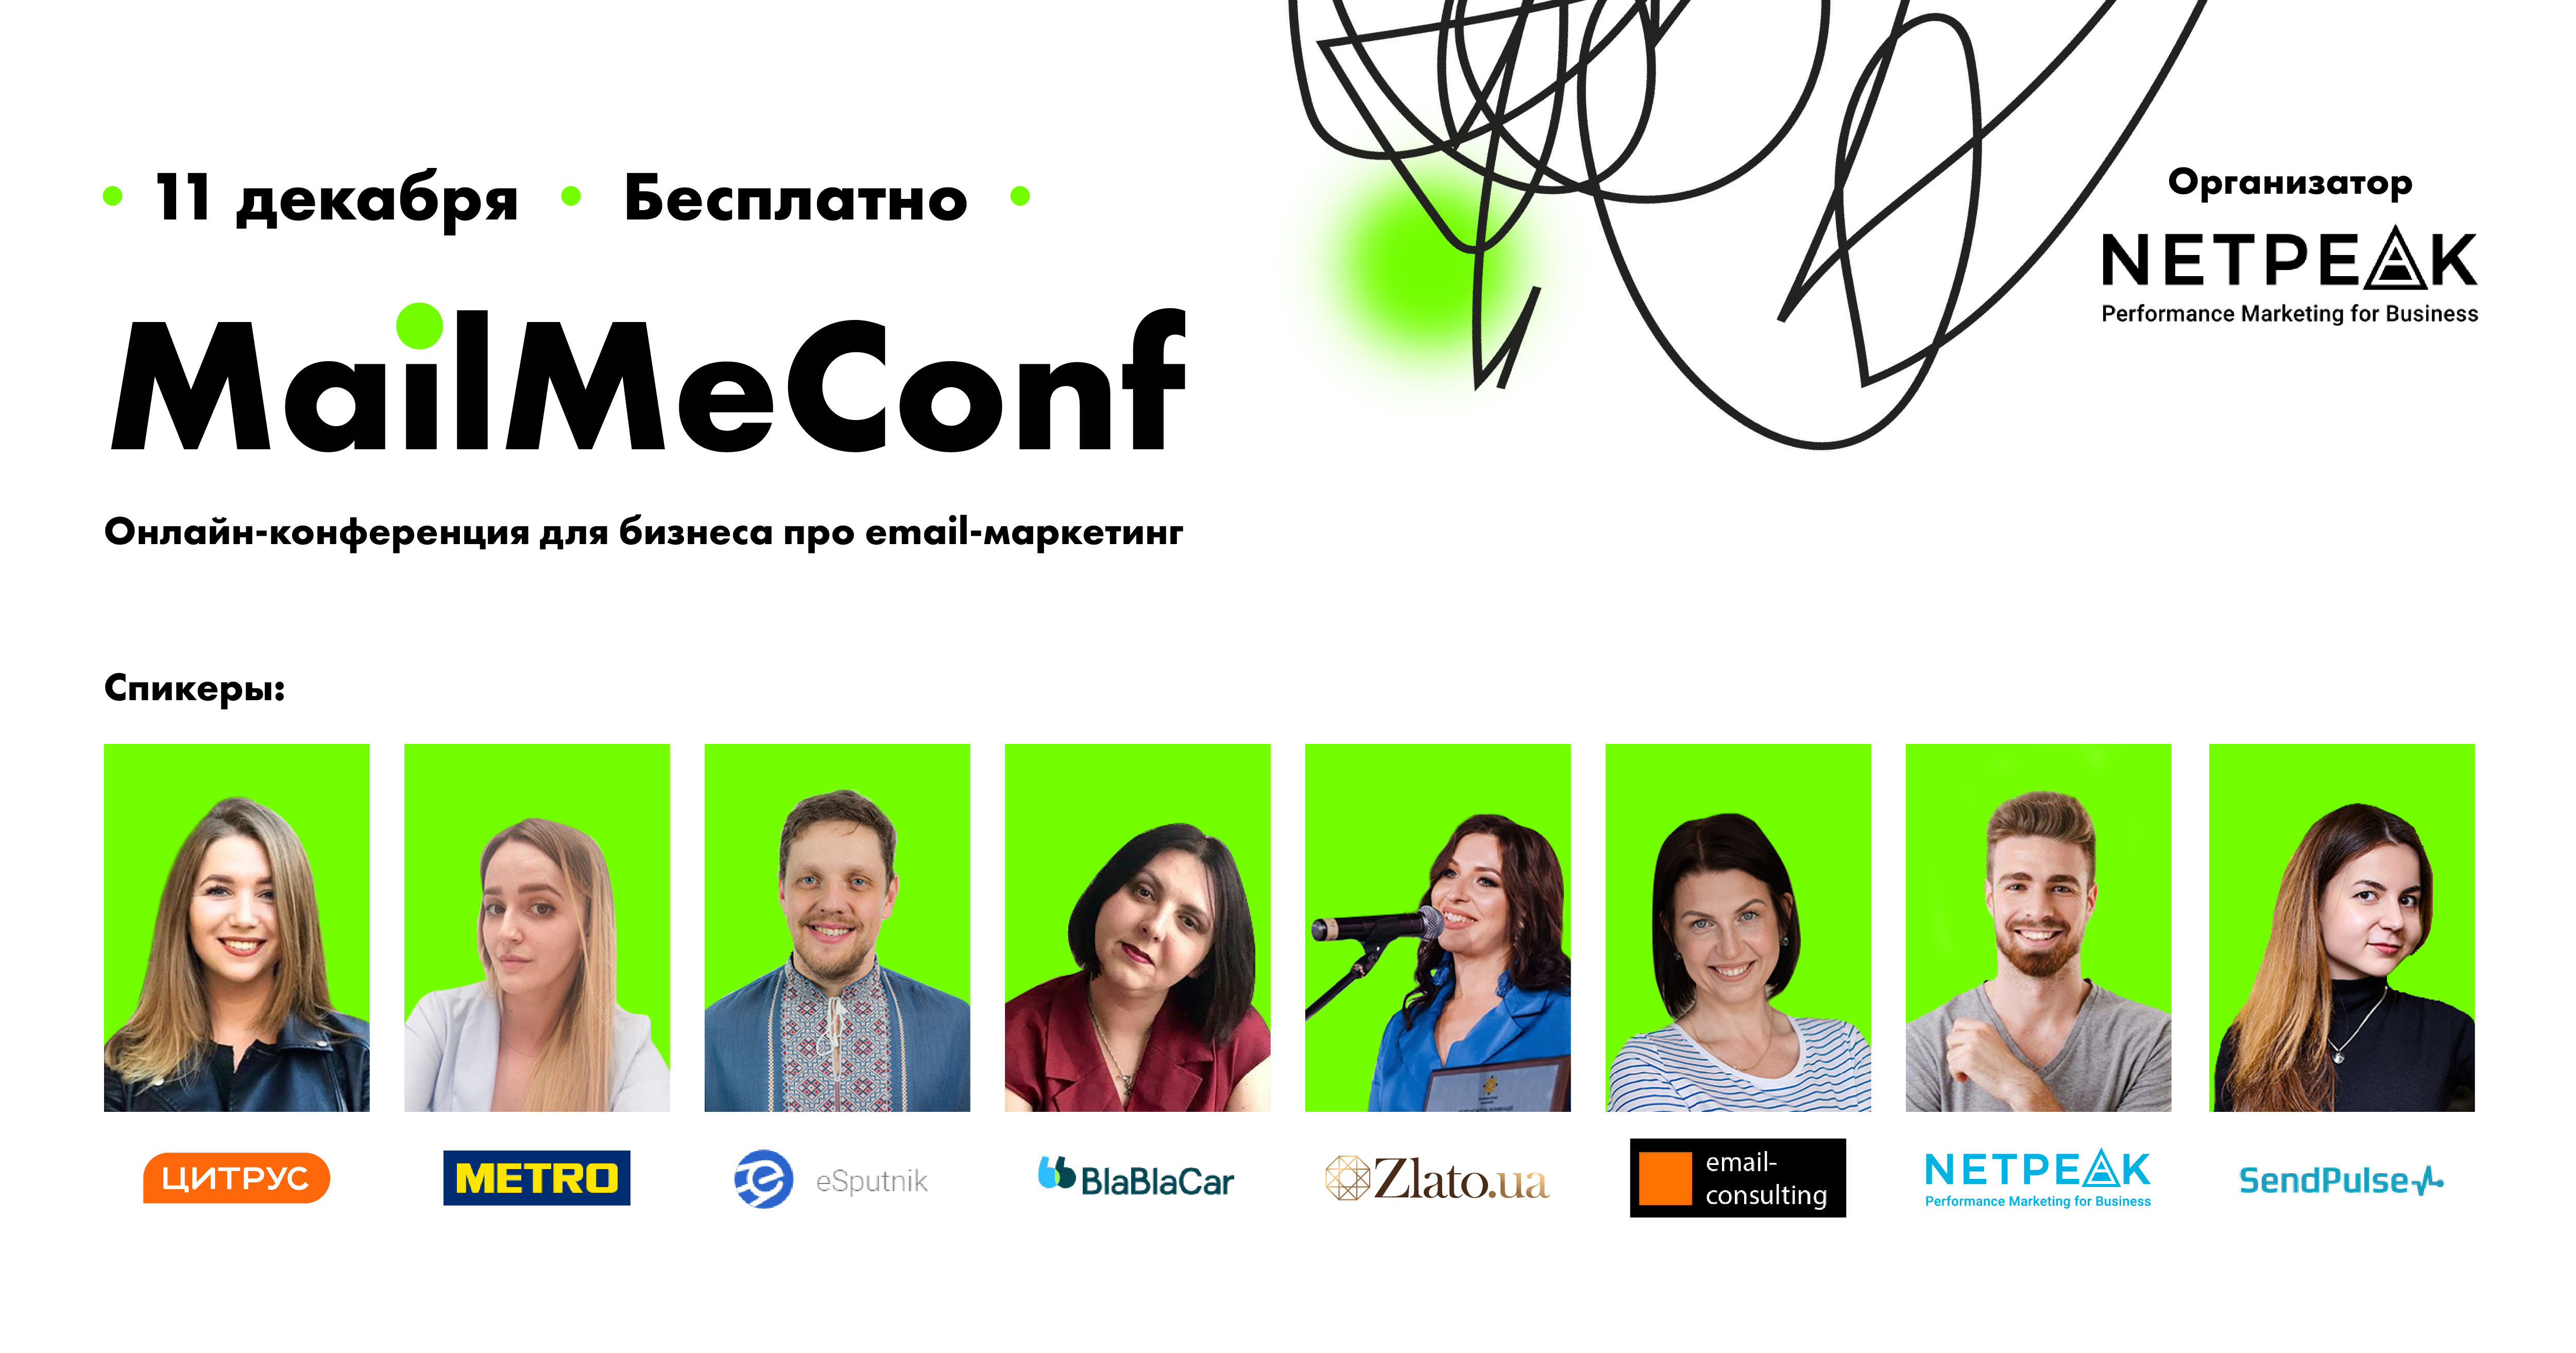 11 декабря – онлайн-конференция для бизнеса об email-маркетинге MailMeConf